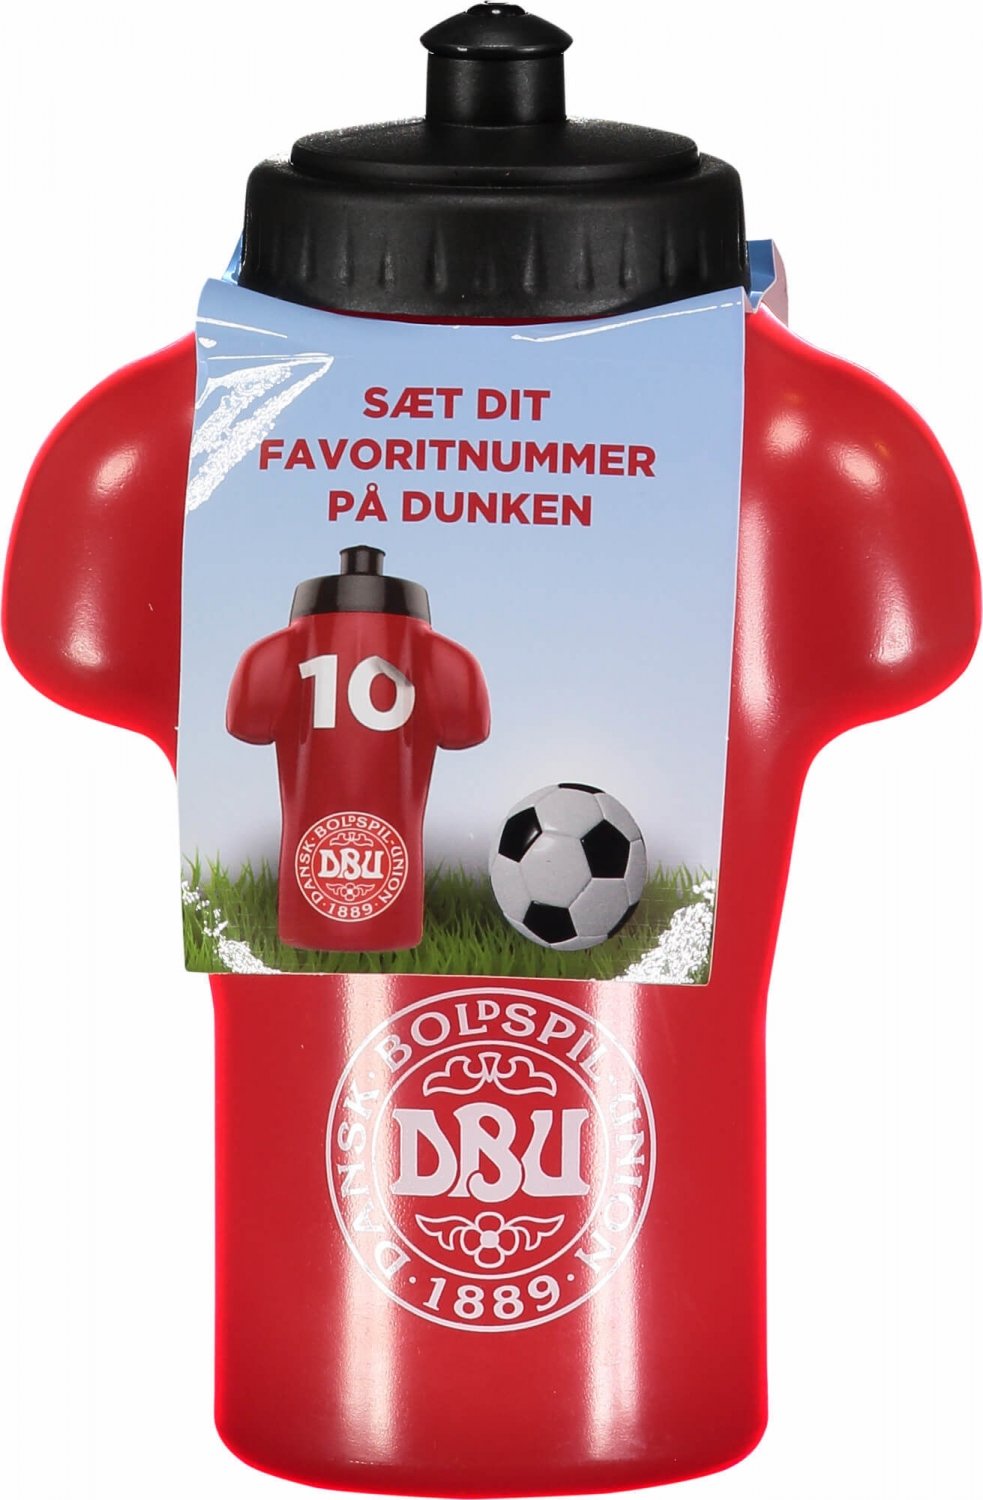 Og så videre Gå op accent Drikkedunk Danmark Fodbold | køb roligan drikkedunk til børn